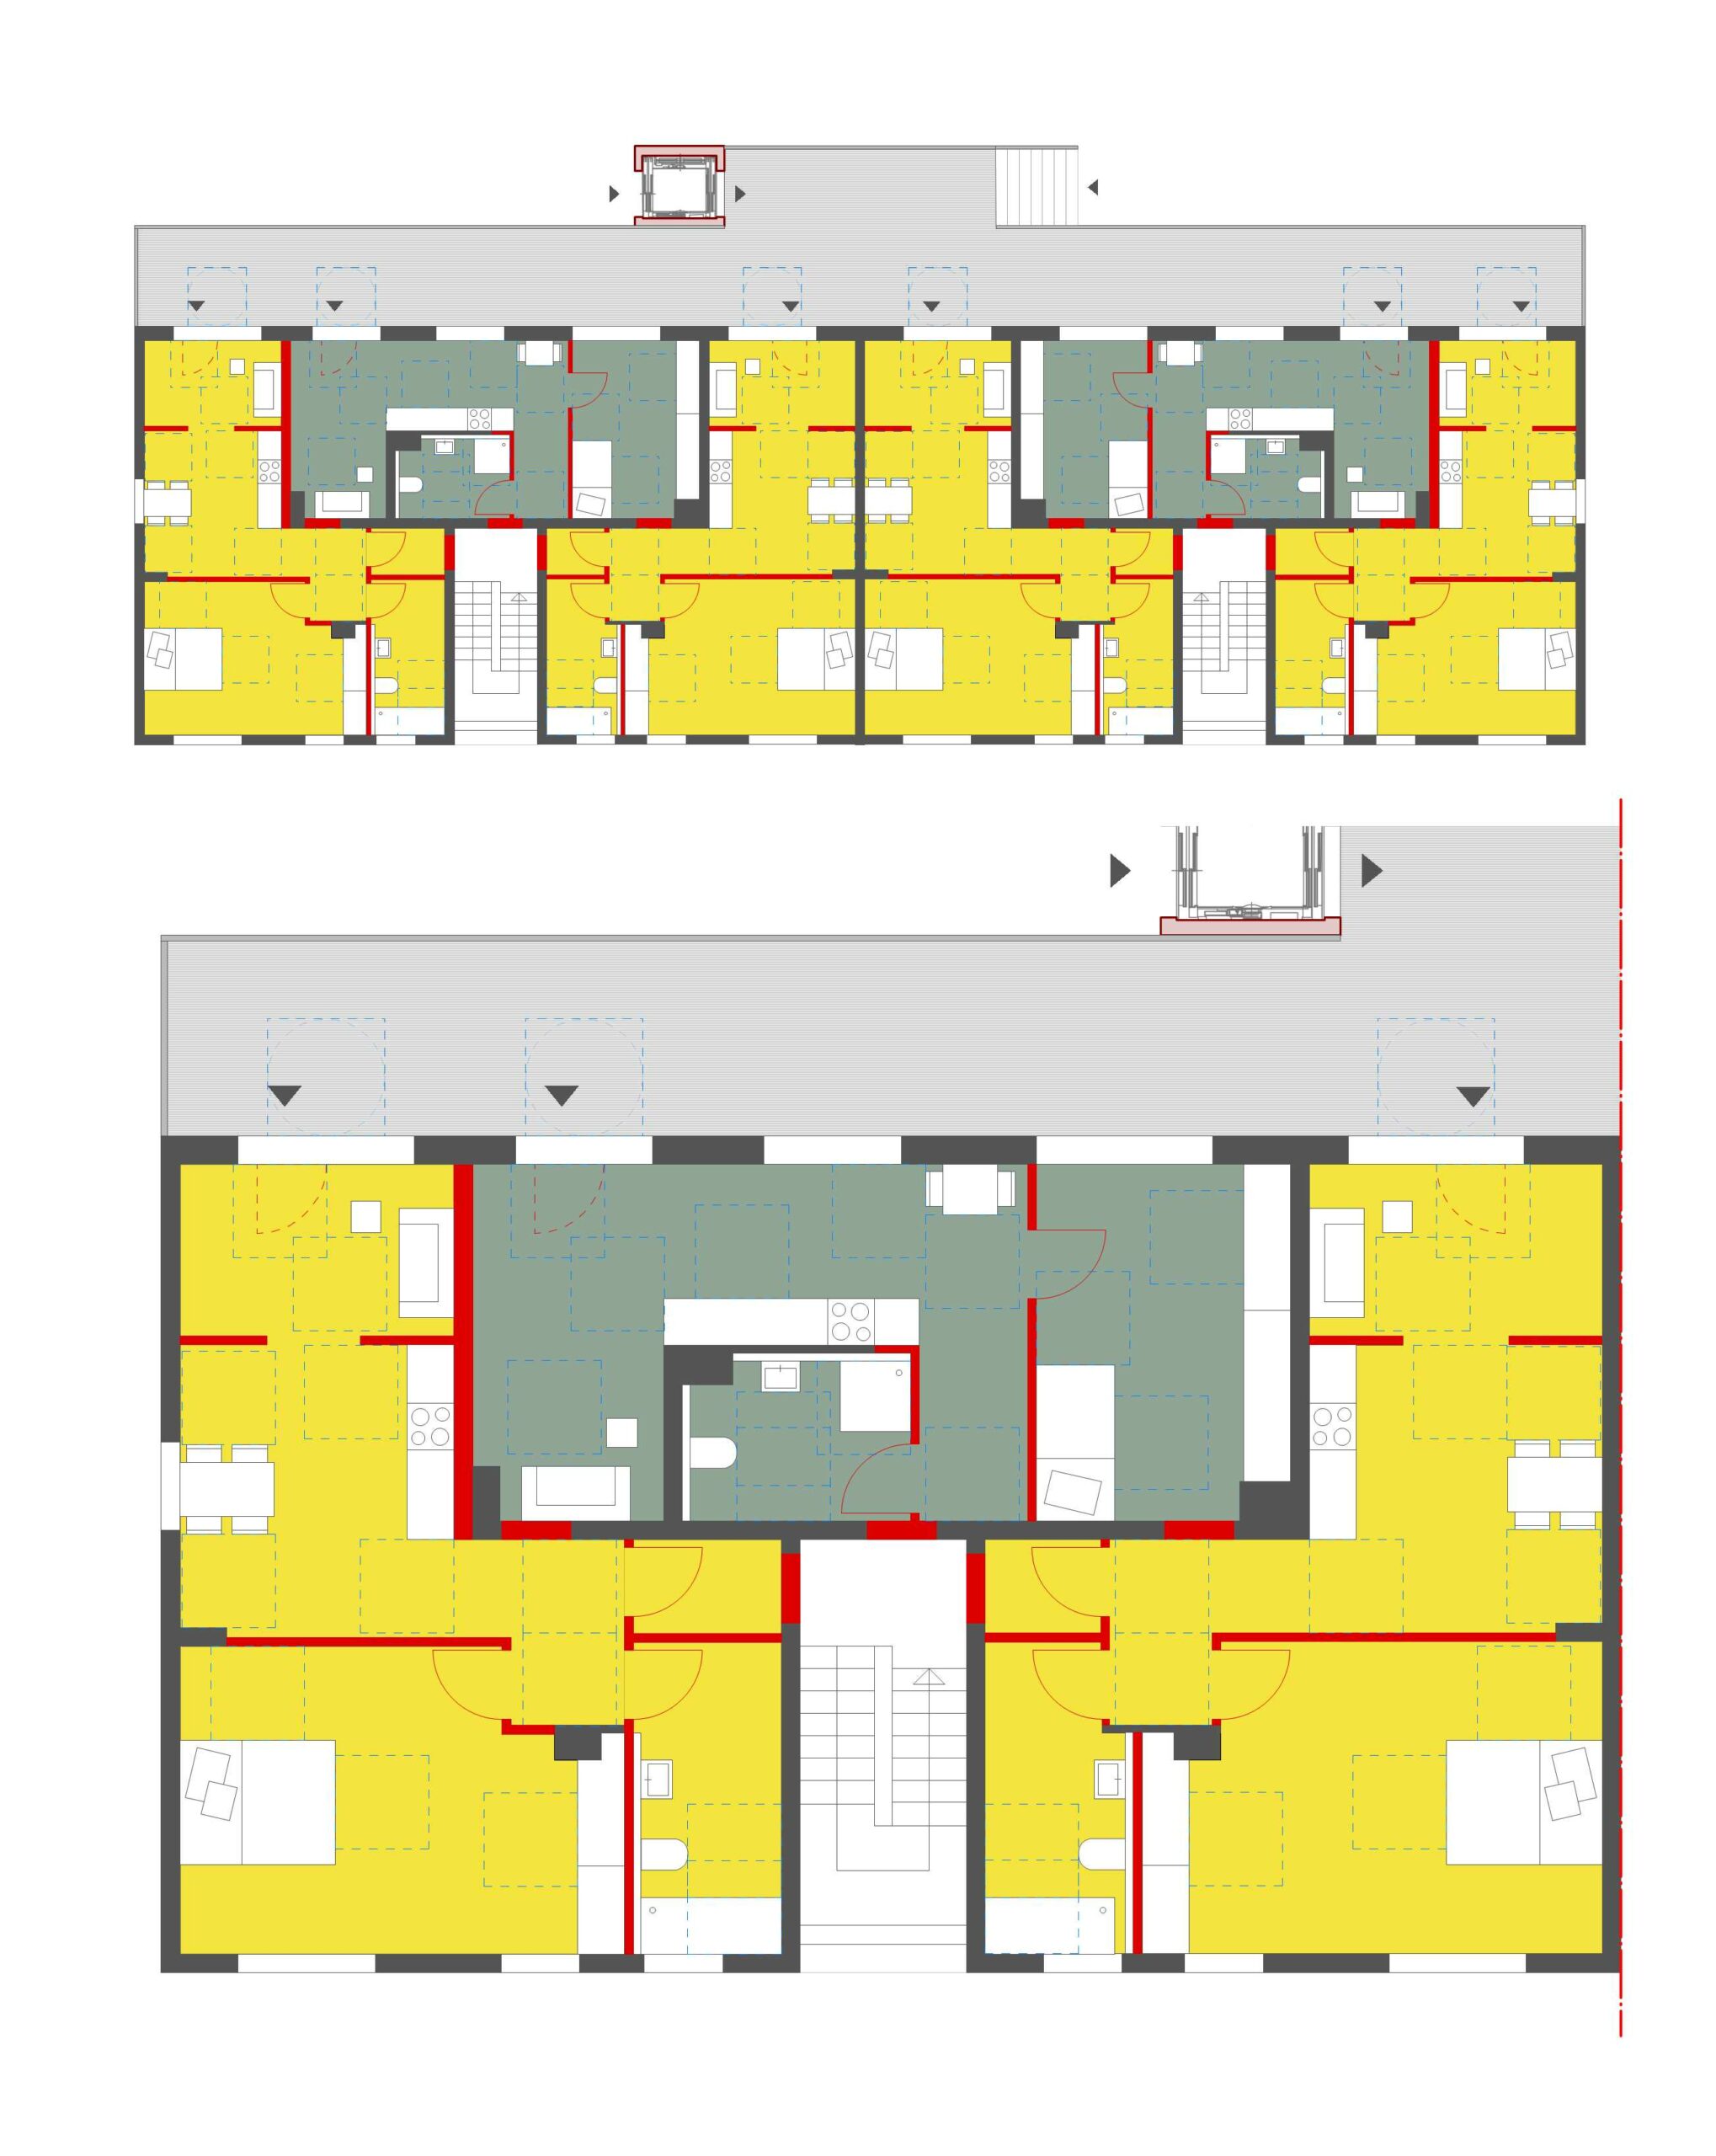 Abbildung 4: Szenario1 – Grundriss mit Aufzug © werkum